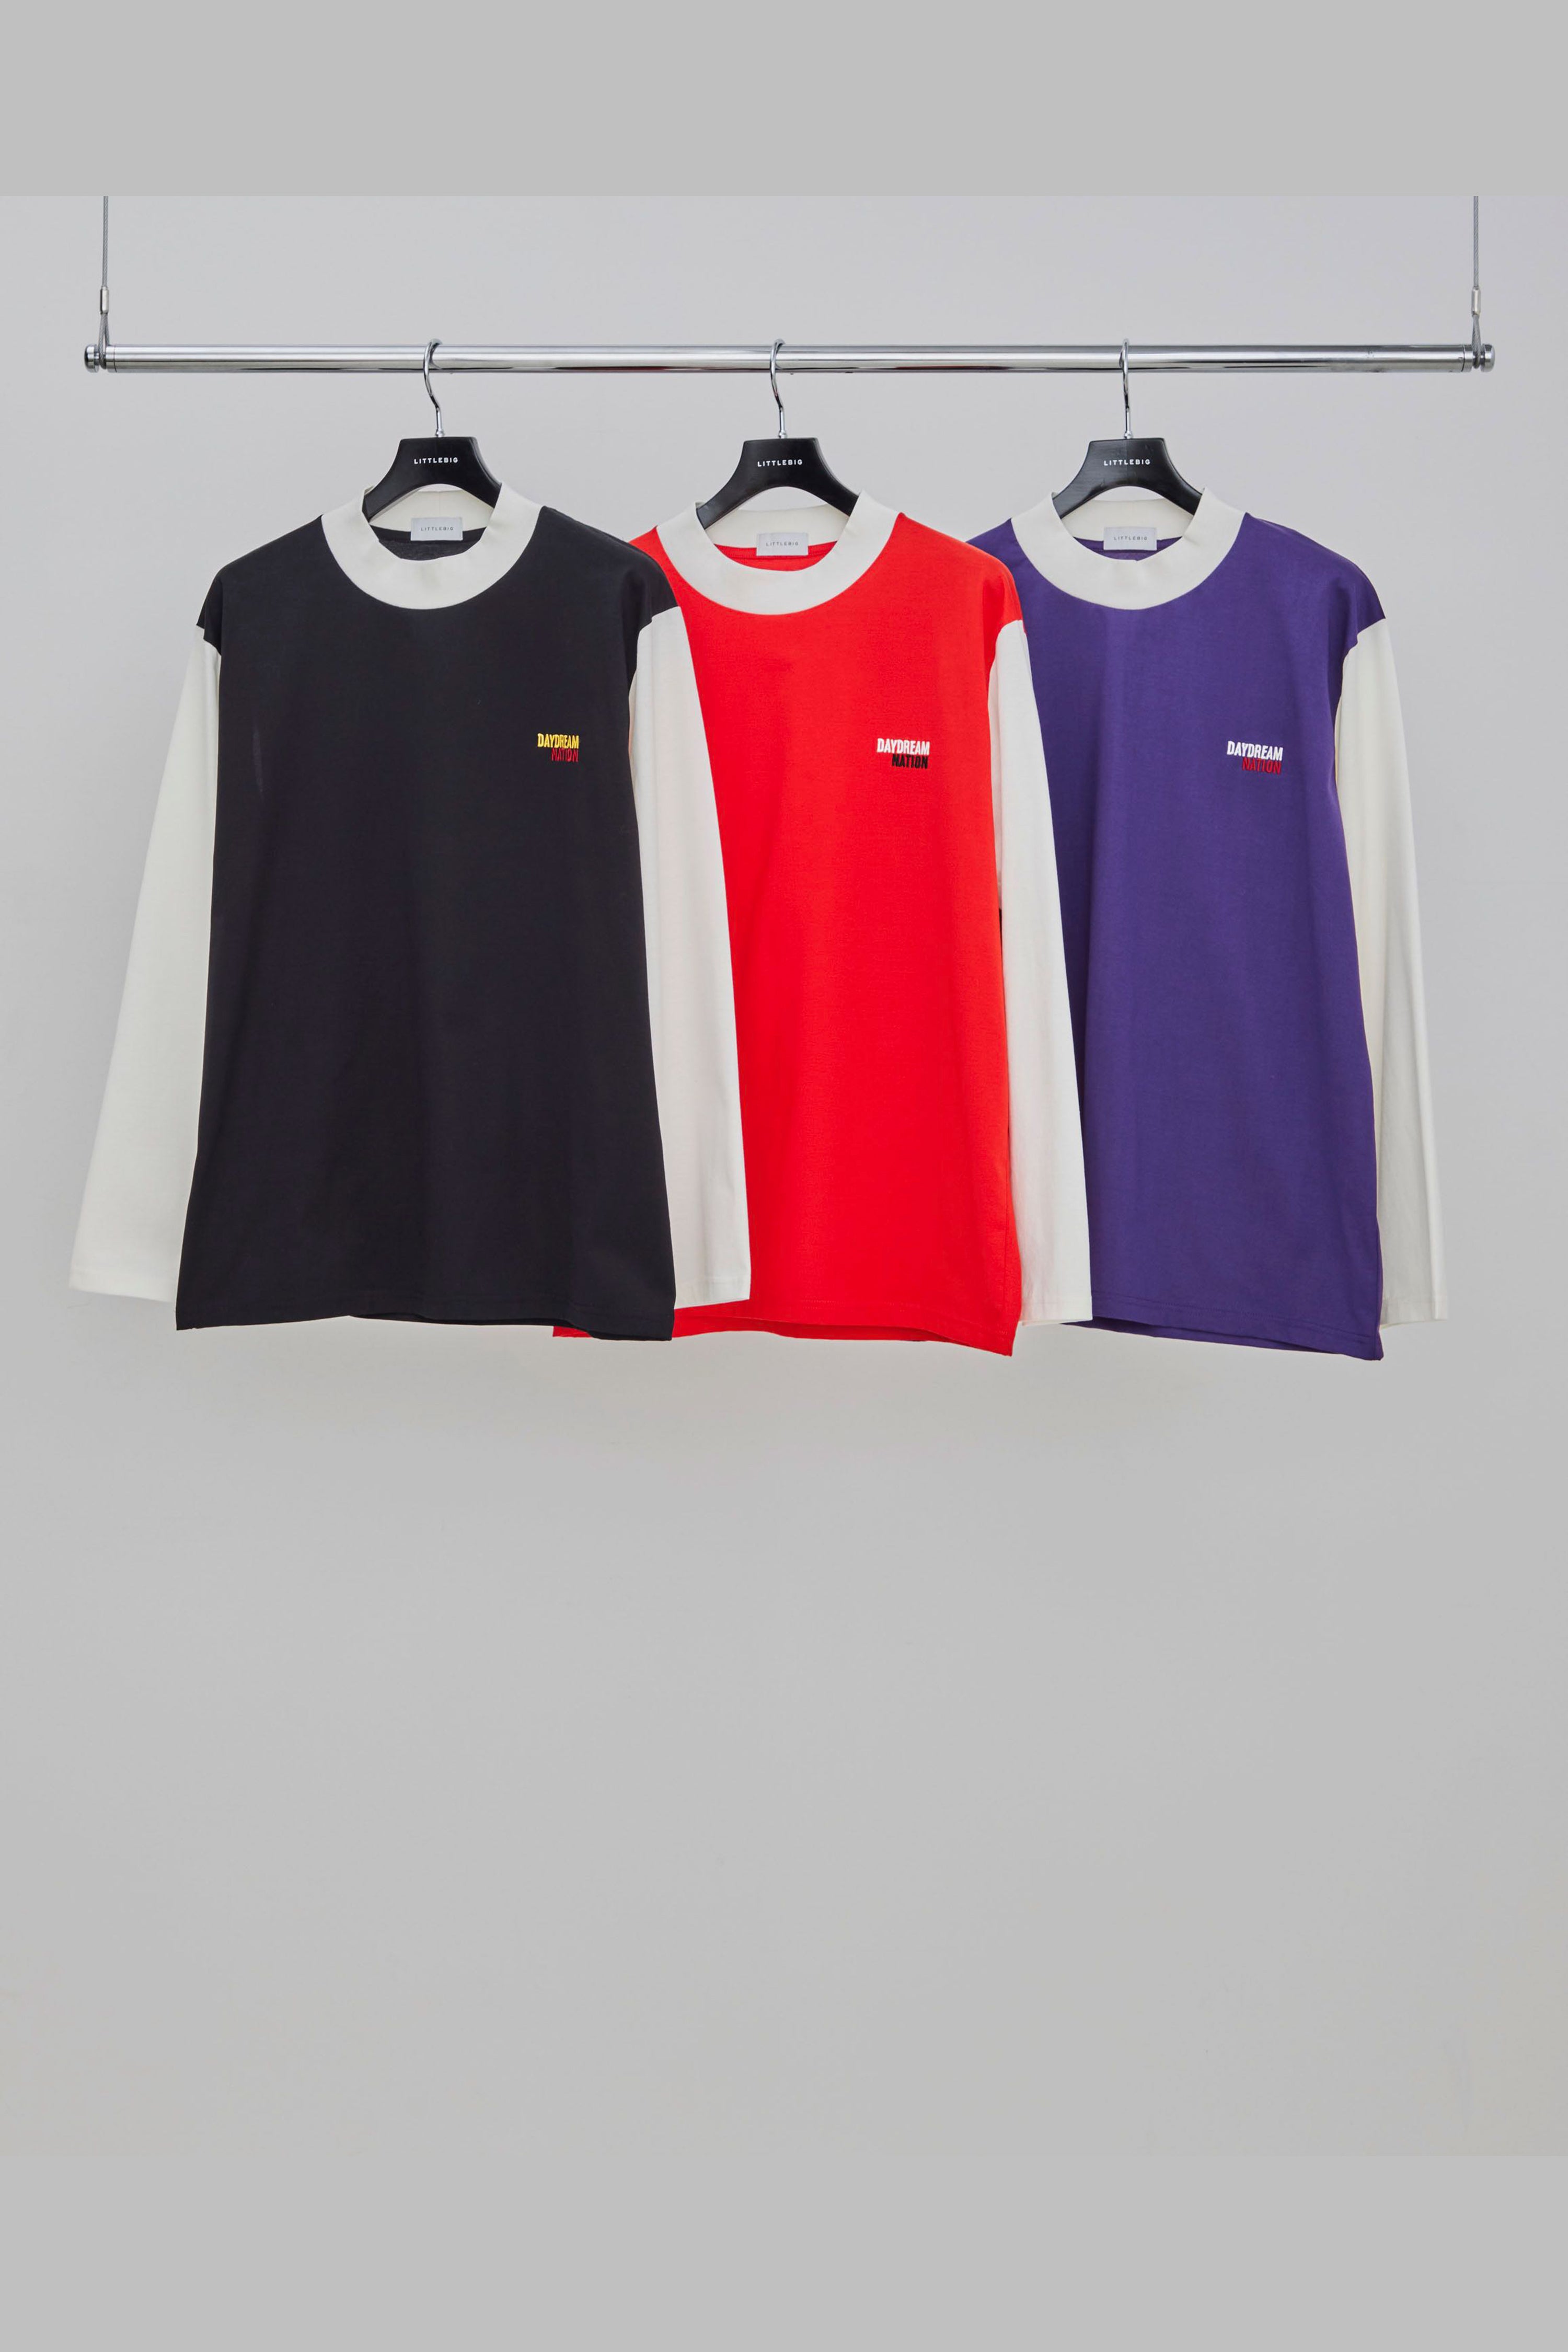 本日限定価格 littlebig 20ss 3way カットソートップス - Tシャツ/カットソー(半袖/袖なし)